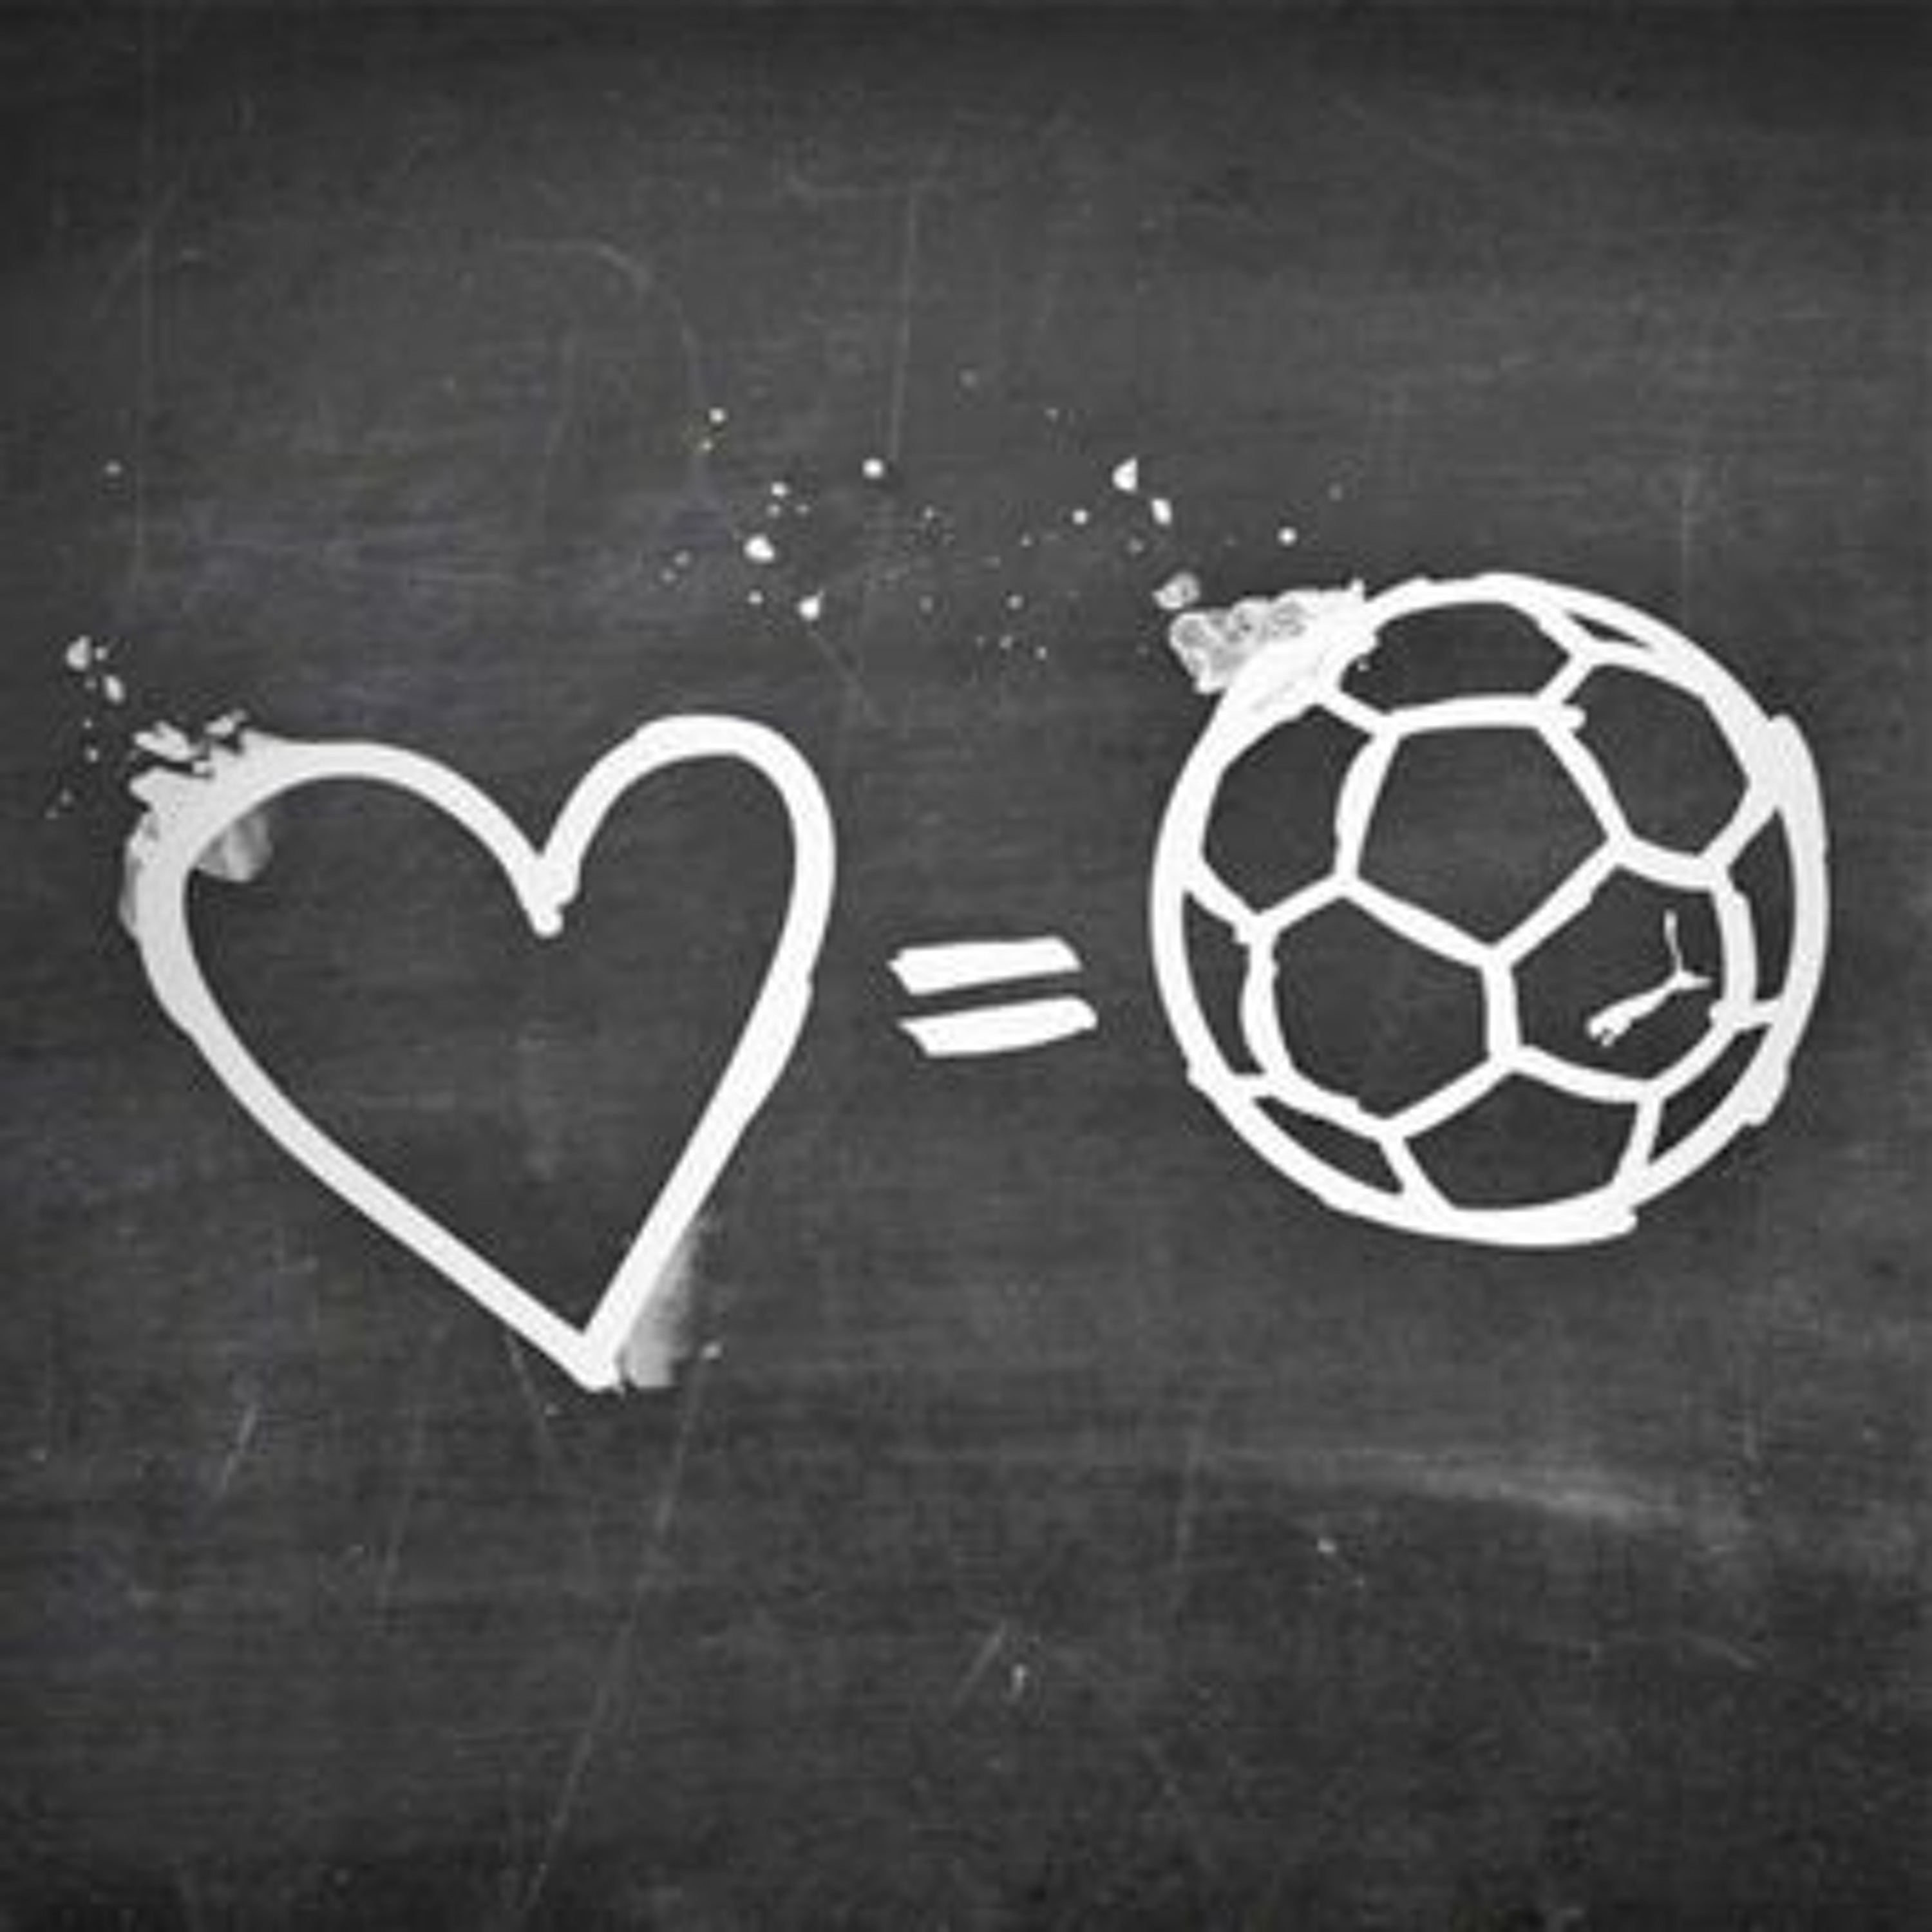 في حب كرة القدم - سورياضي 15